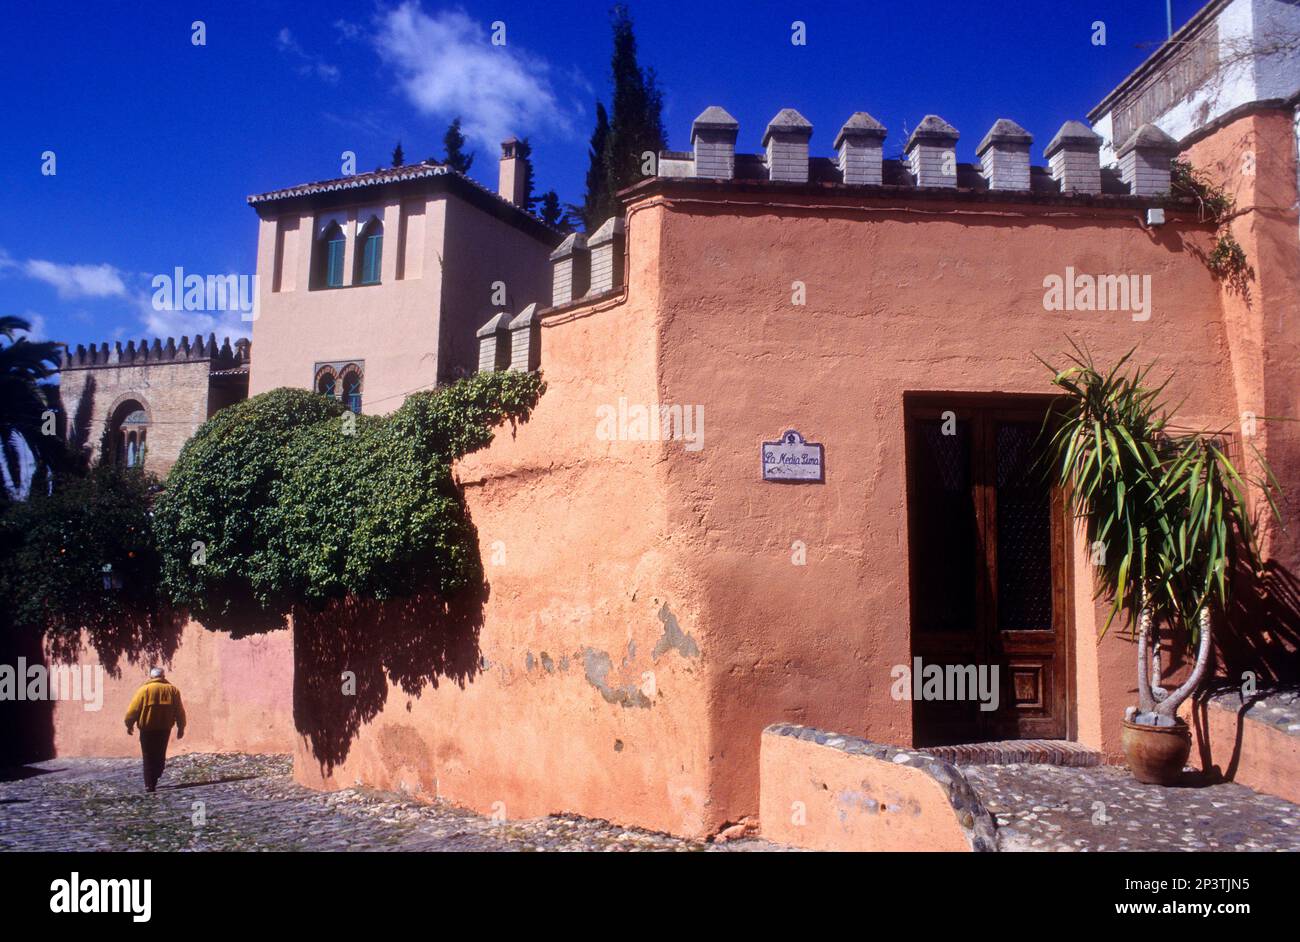 Facade of Carmen de la Media Luna, Cuesta de San Gregorio. Albaicin quarter, Granada, Andalusia, Spain Stock Photo